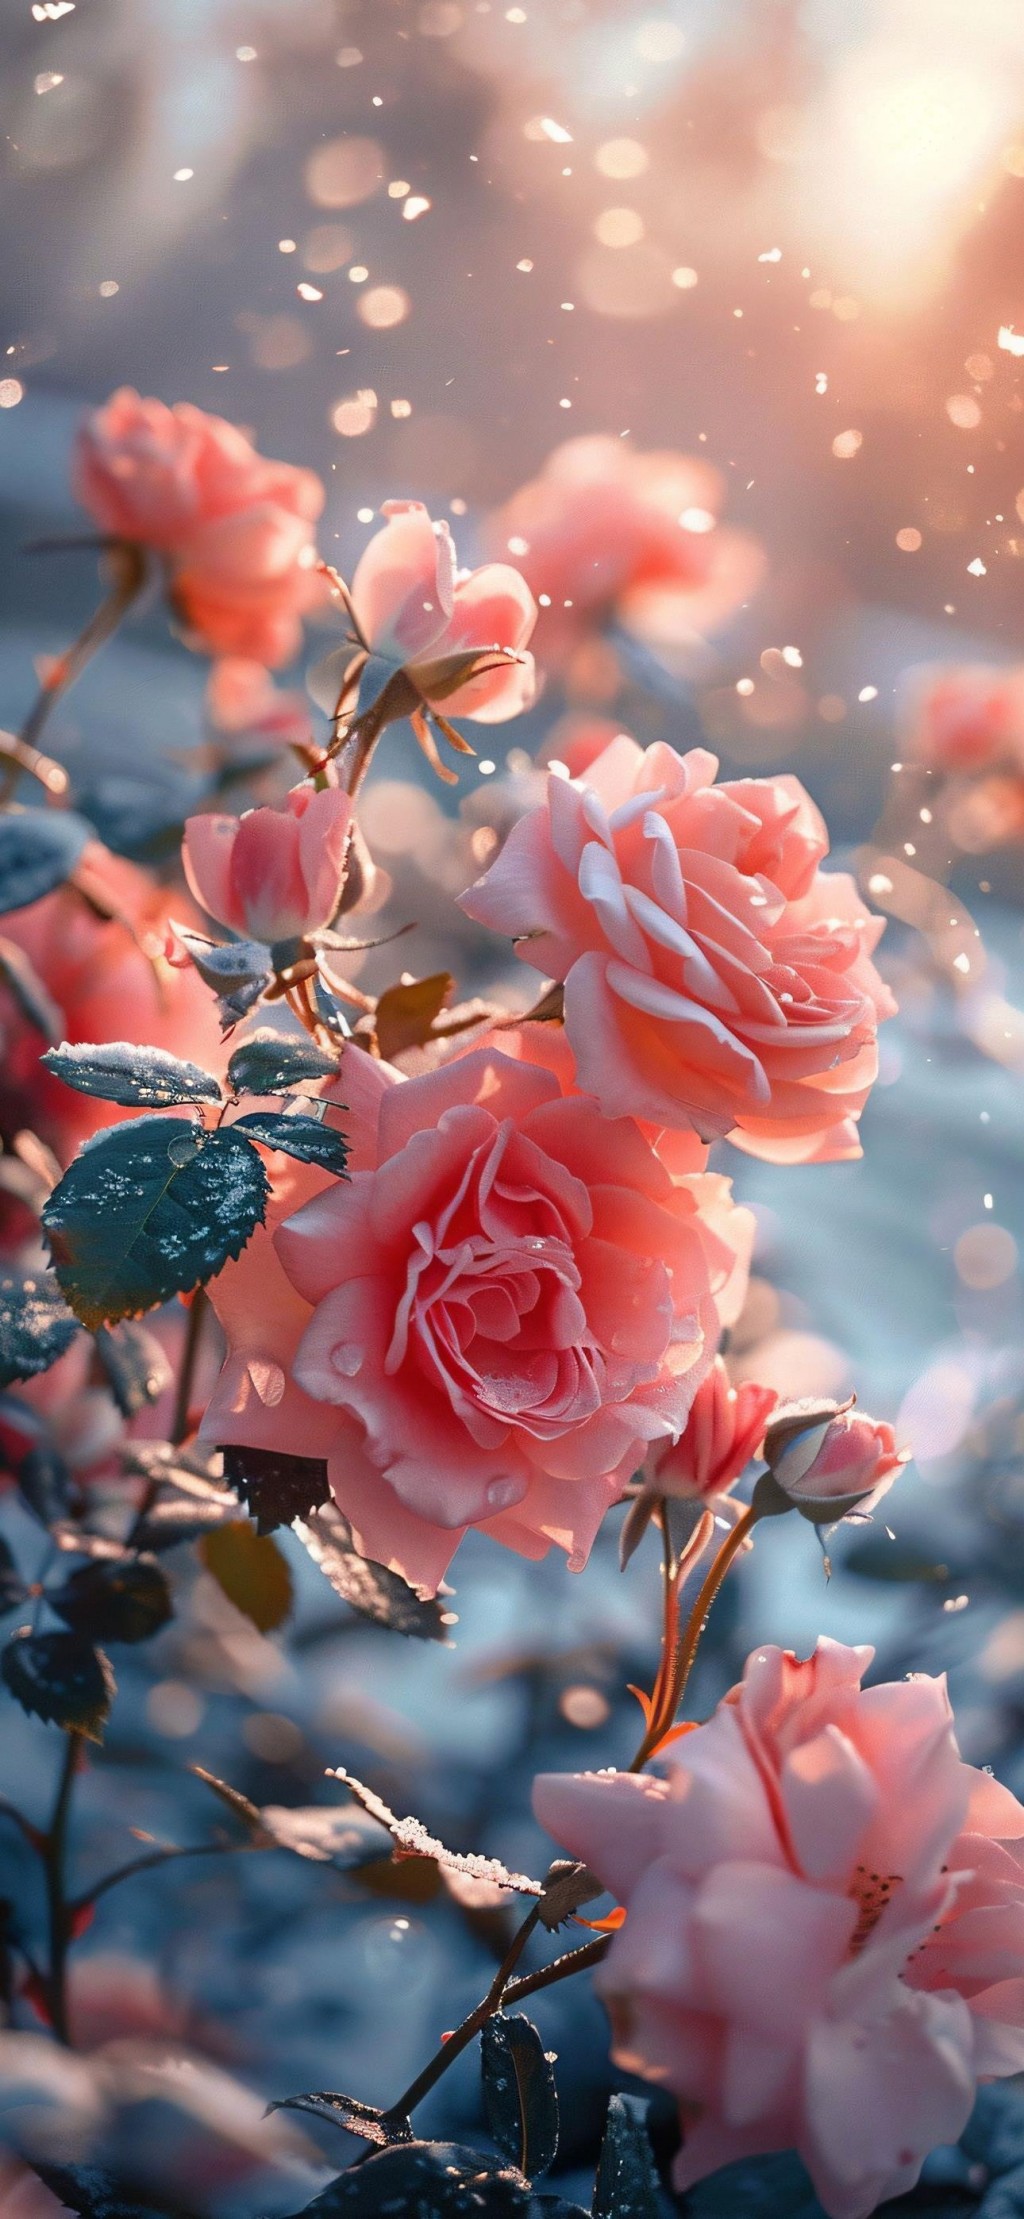 浪漫雪地粉色玫瑰花海手机壁纸